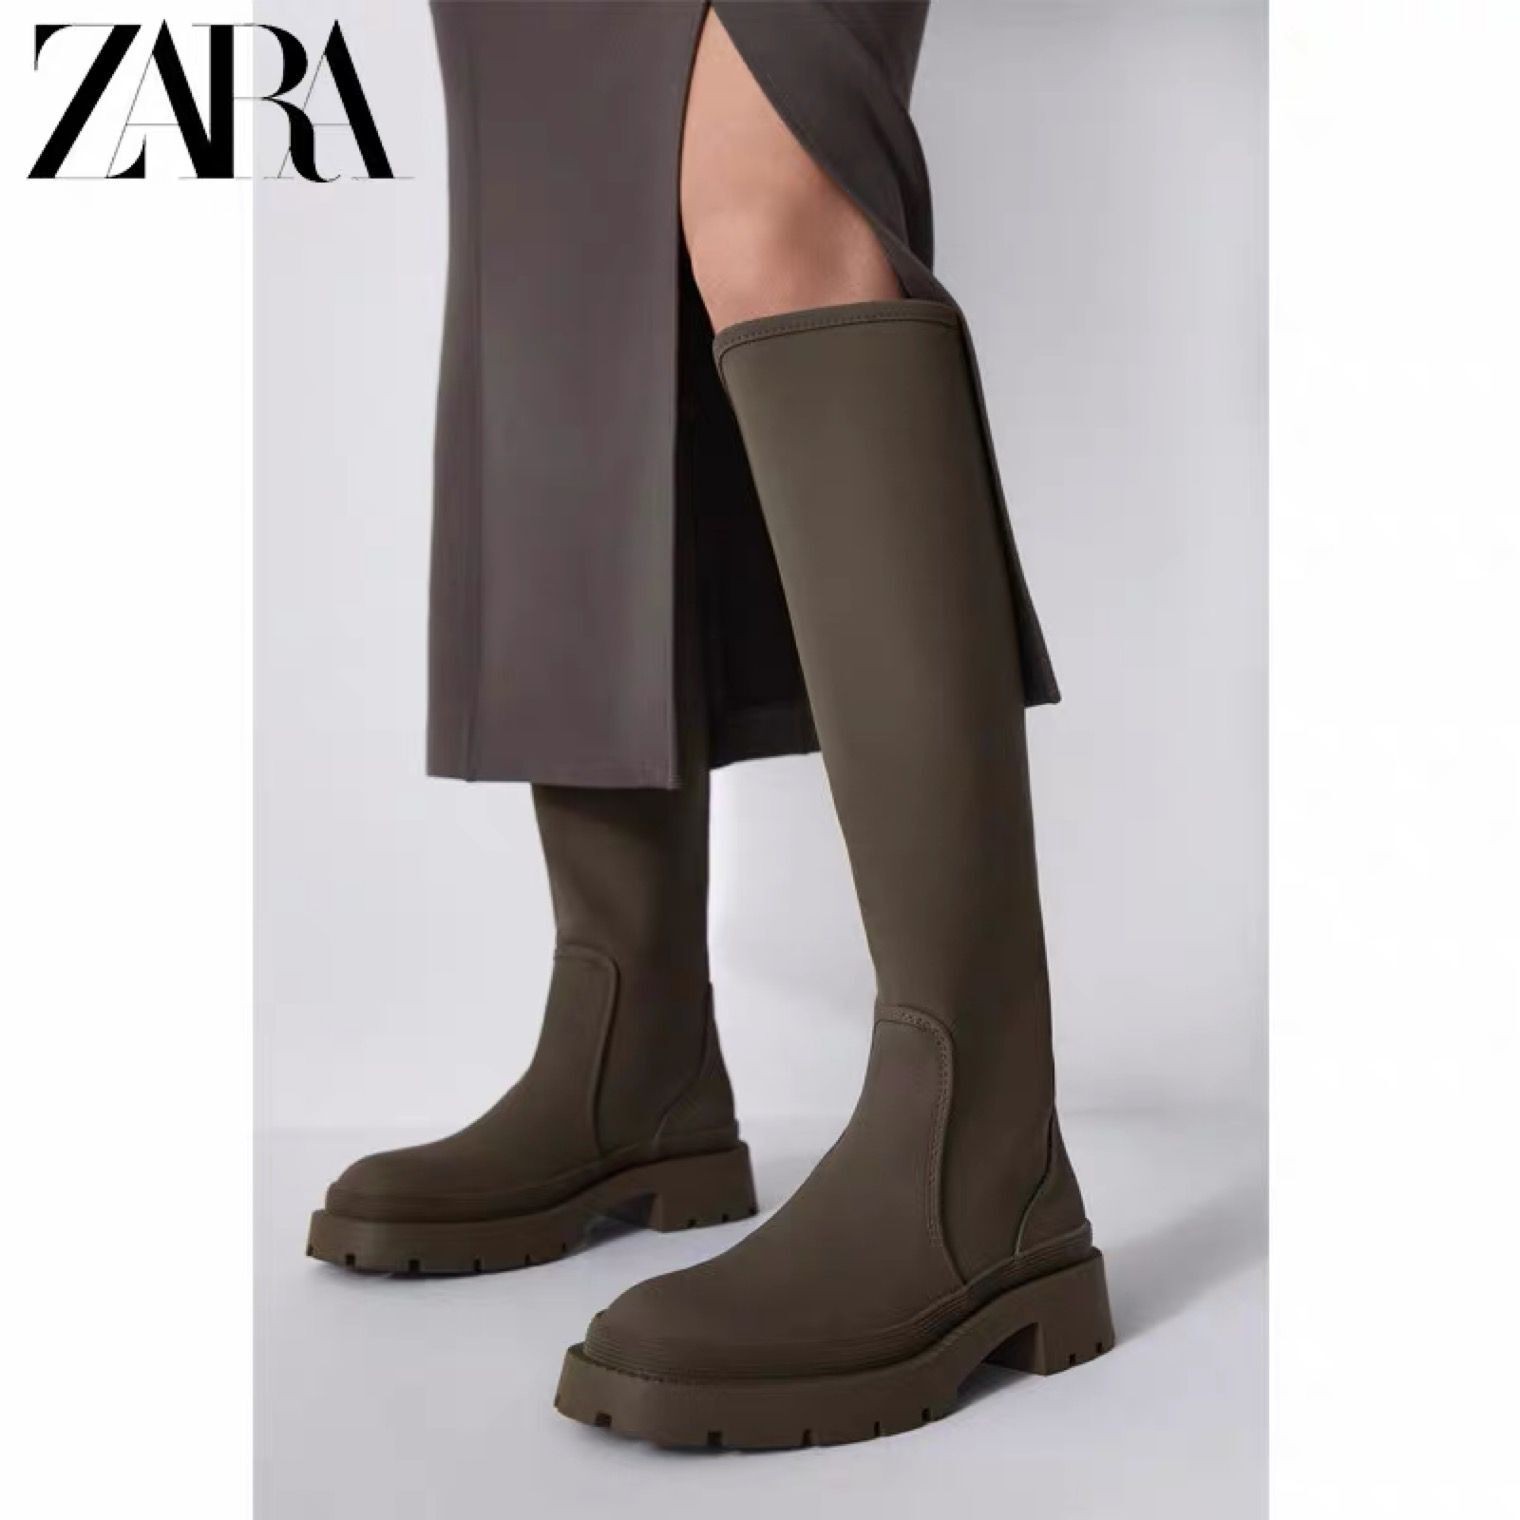 现货ZAR正品女鞋新款高筒靴厚底平底长筒骑士靴显瘦不过膝长靴子